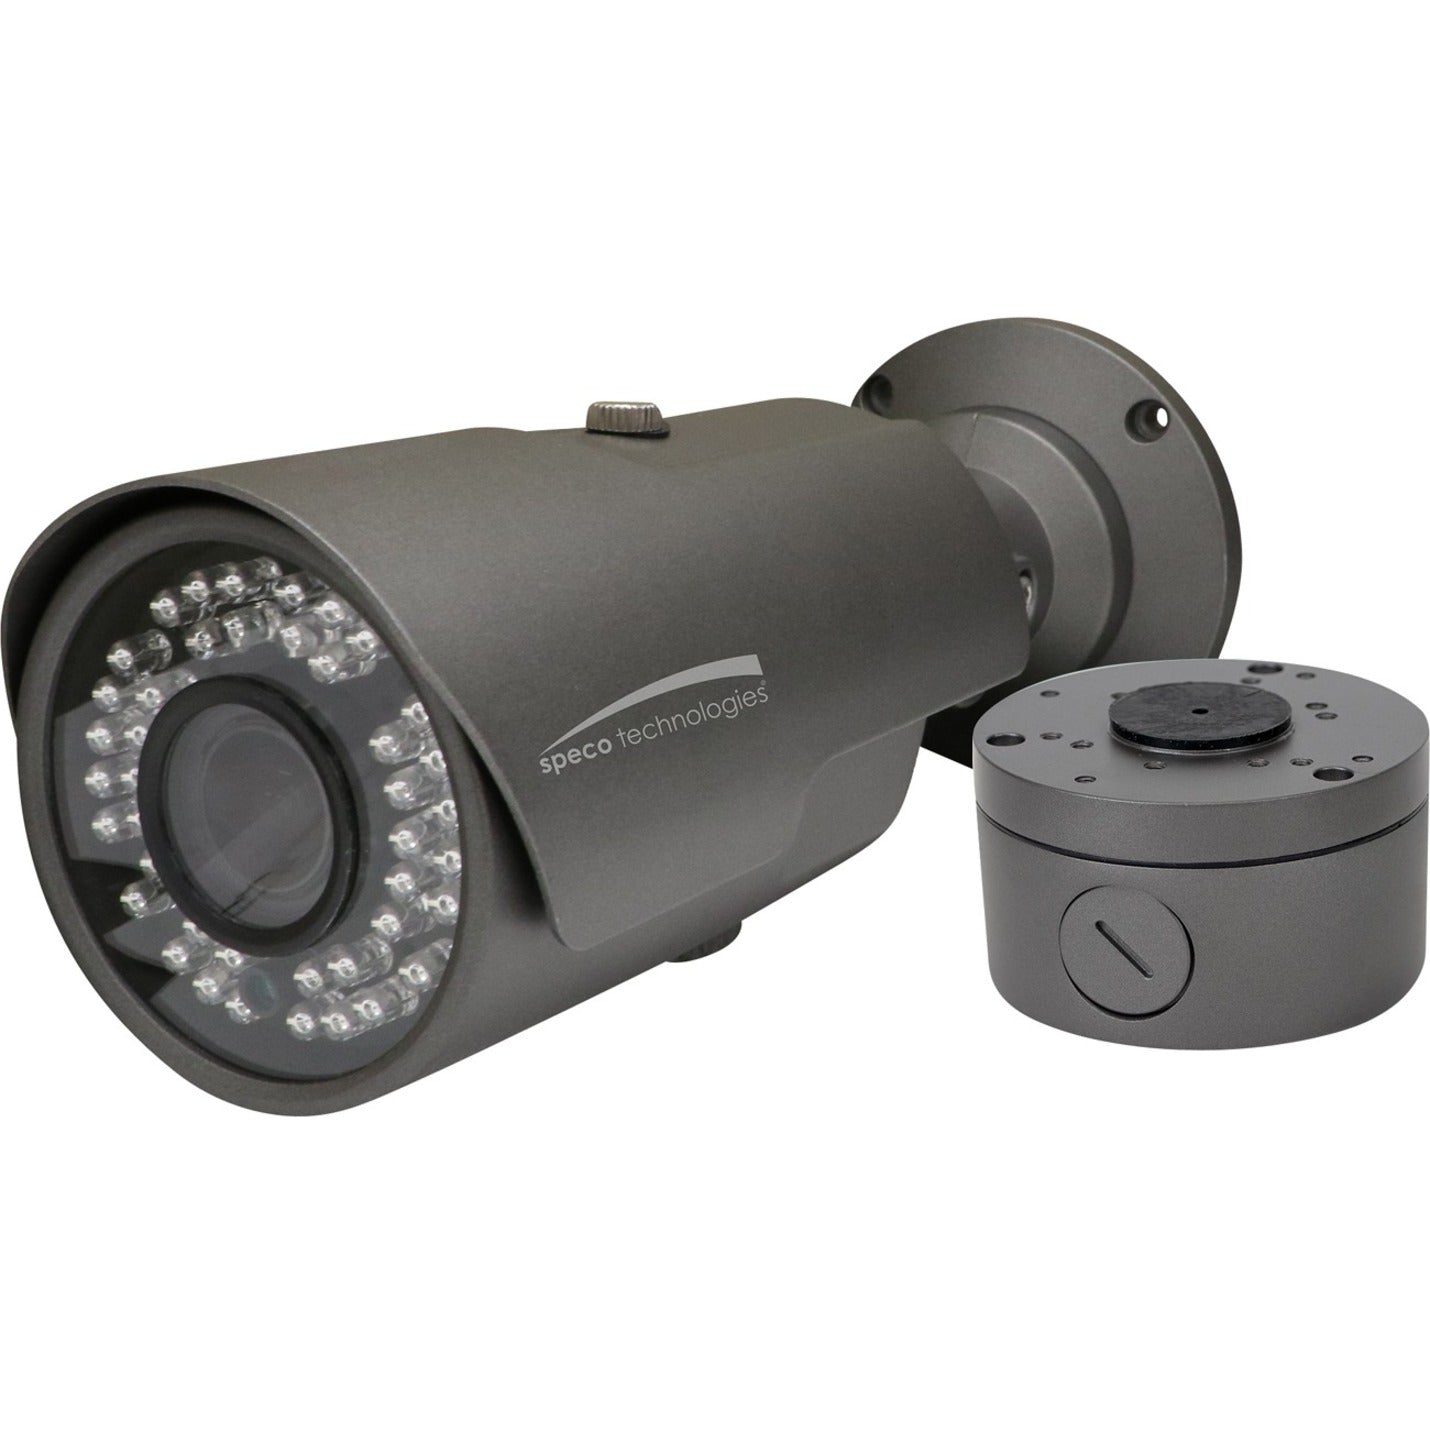 Speco HT7040TM 2MP HD-TVI IR Bullet Kamera mit inkludiertem Anschlusskasten Varifocal Objektiv 28-12mm 1080p Full HD wetterfest vandalensicher